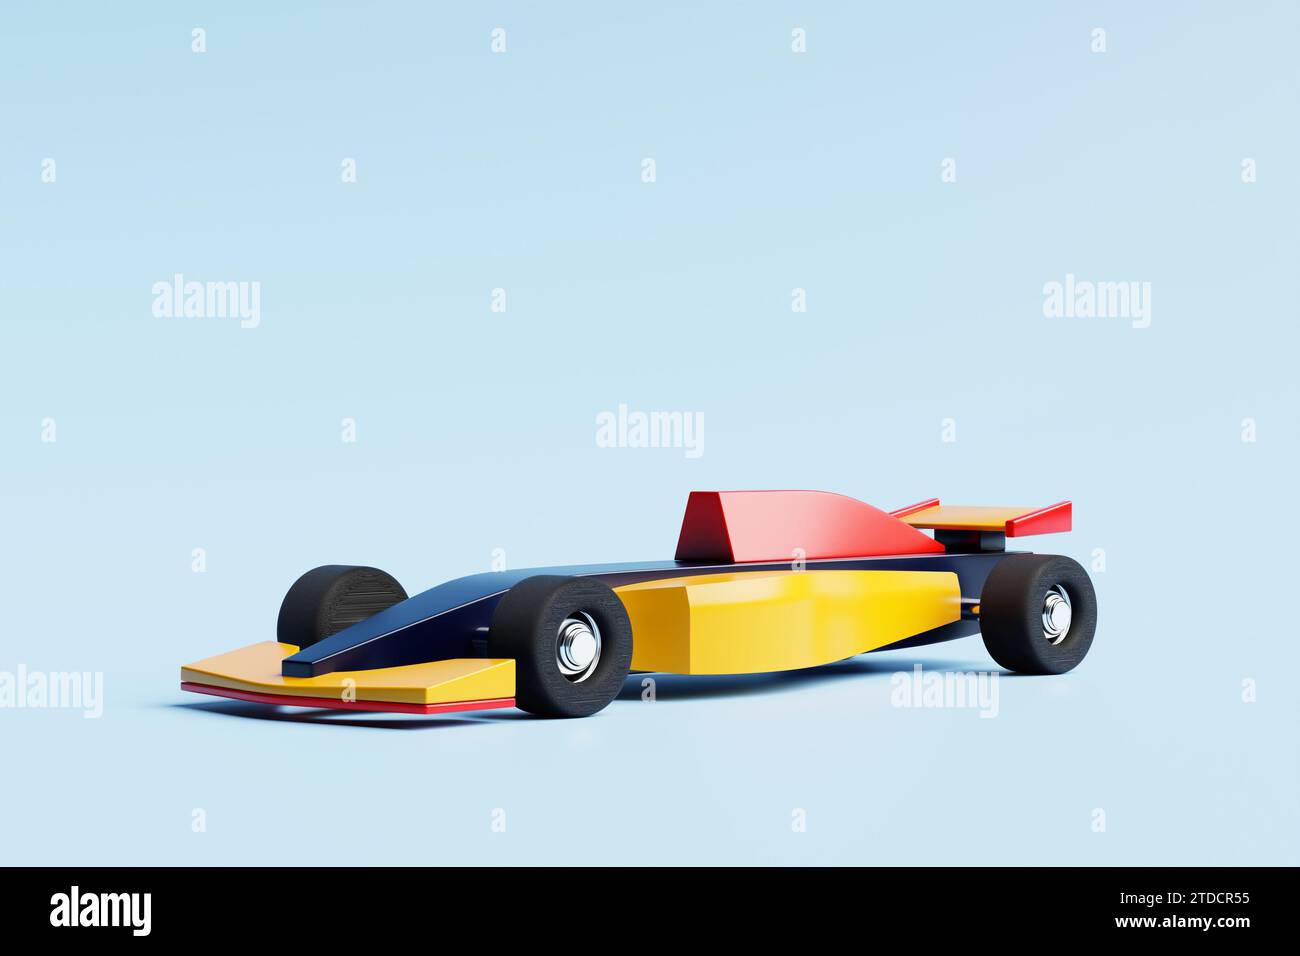 ilustración 3d de un coche colorido del juguete de carreras en el fondo aislado azul. Foto de stock